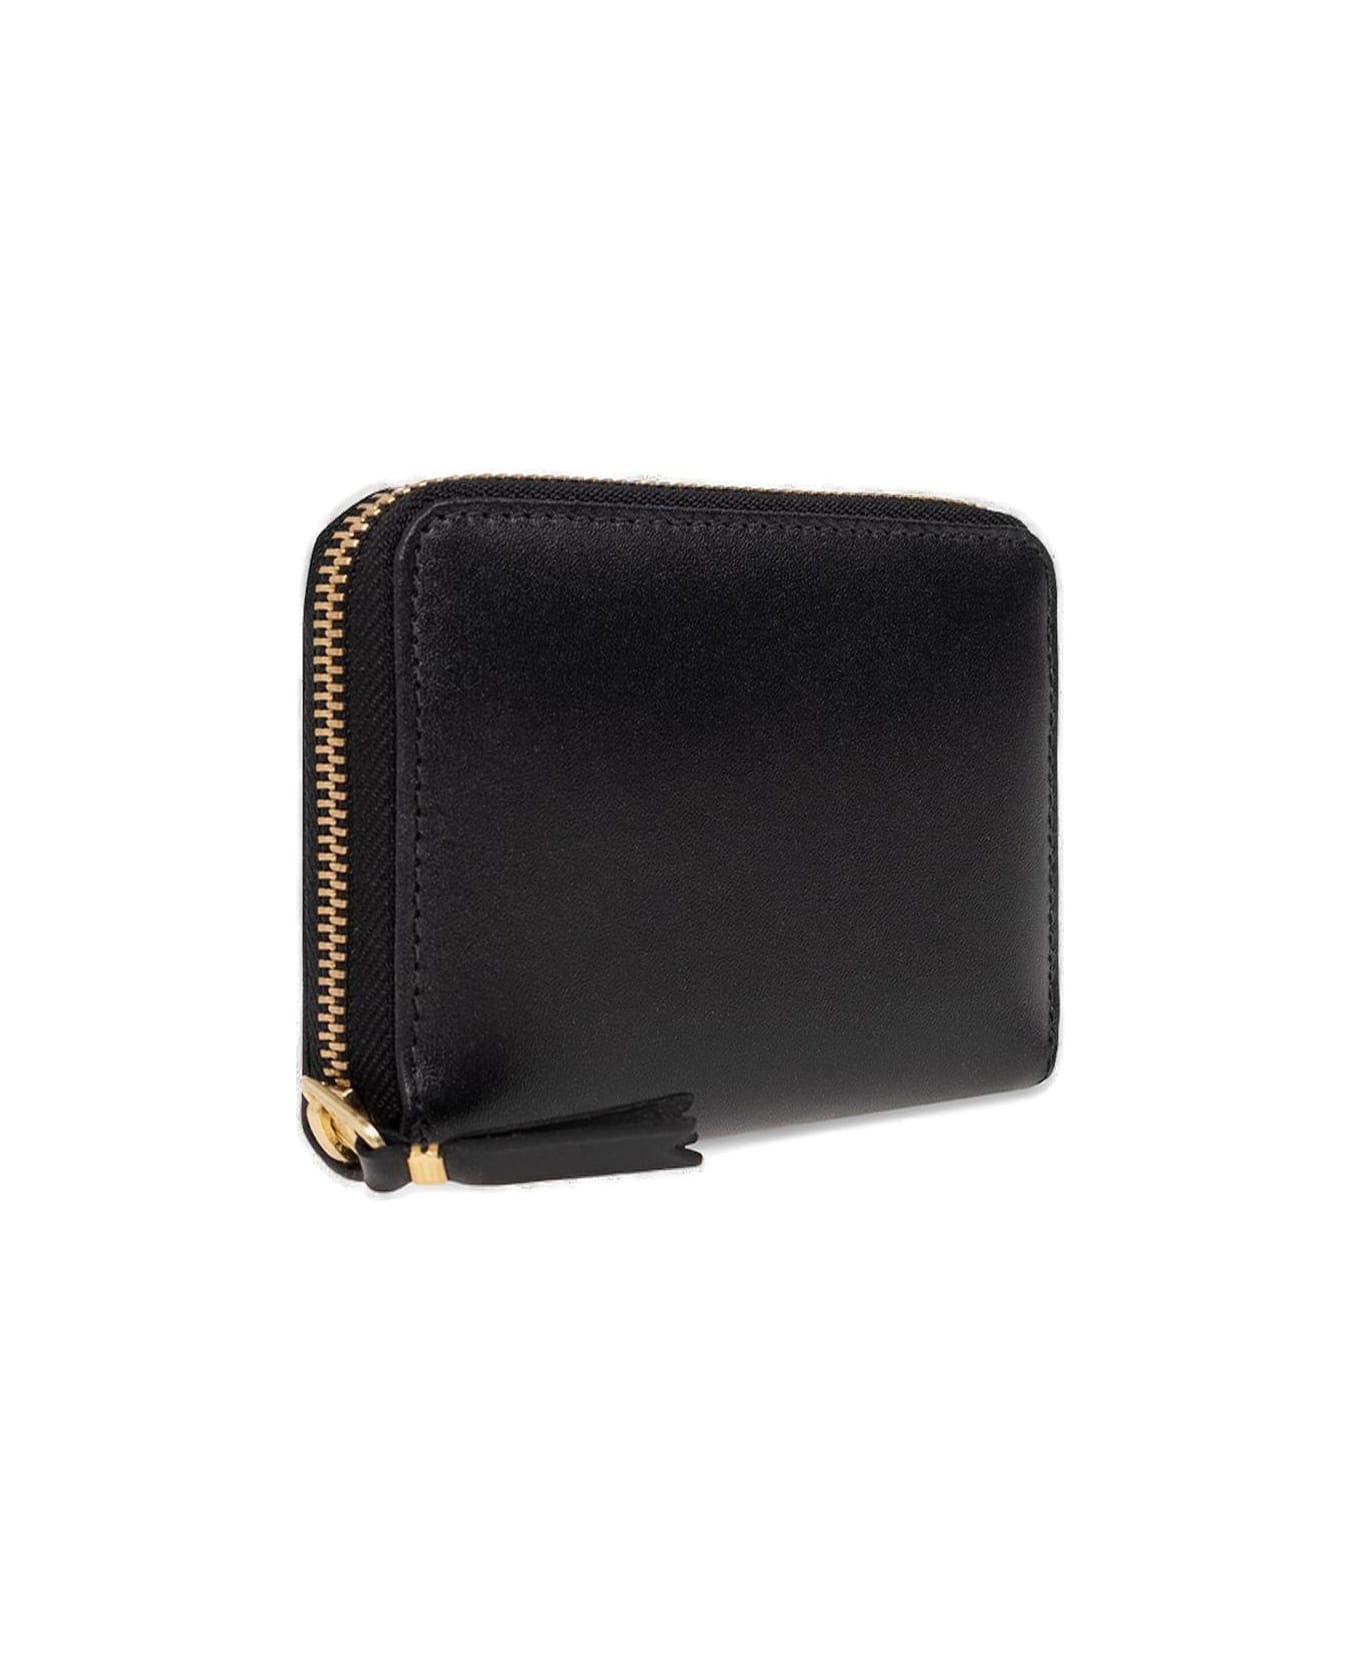 Comme des Garçons Wallet Classic Zipped Wallet - Black 財布